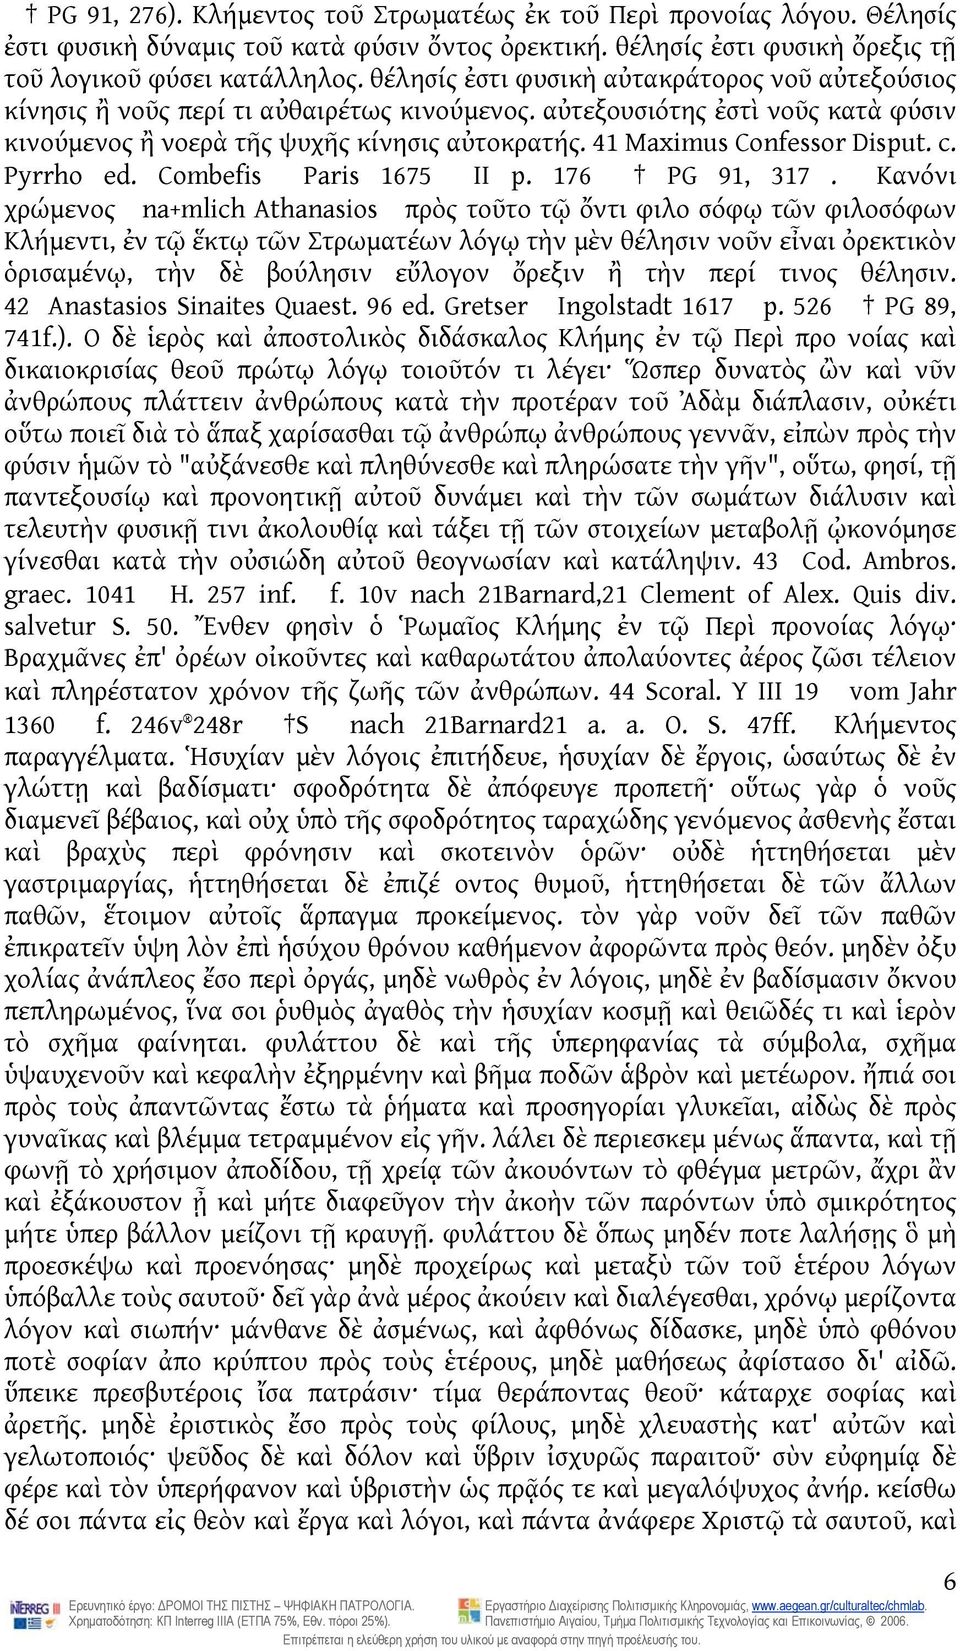 41 Maximus Confessor Disput. c. Pyrrho ed. Combefis Paris 1675 II p. 176 PG 91, 317.